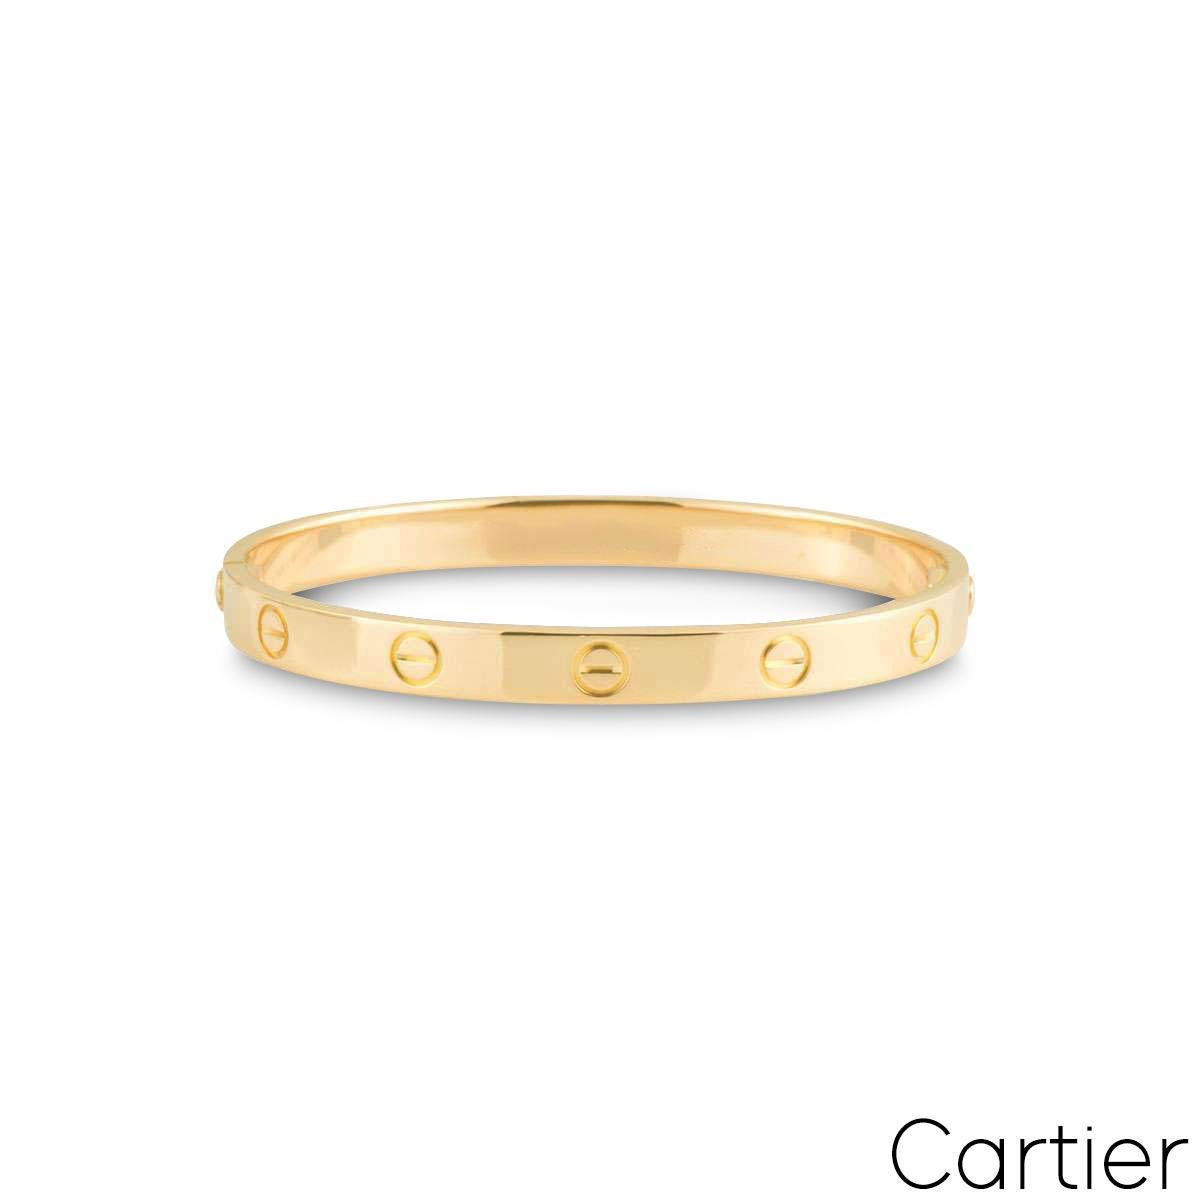 Un bracelet signature de Cartier en or jaune 18 carats de la collection Love. Le bracelet arbore le motif iconique de la vis sur le pourtour extérieur et présente le nouveau style d'emboîtement à vis. Ce bracelet pèse 37,6 grammes et est de taille